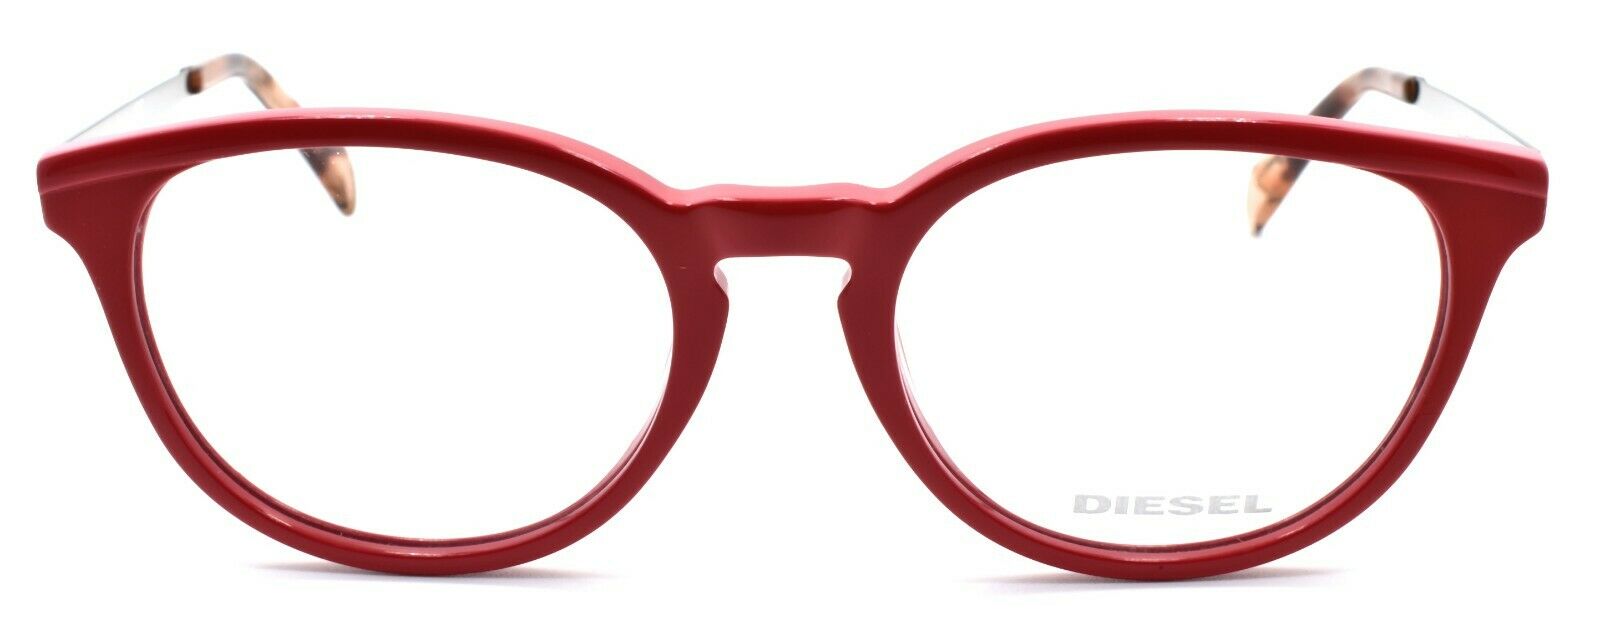 2-Diesel DL5150 068 Eyeglasses Frames 50-18-140 Red Cherry Palladium-664689707492-IKSpecs